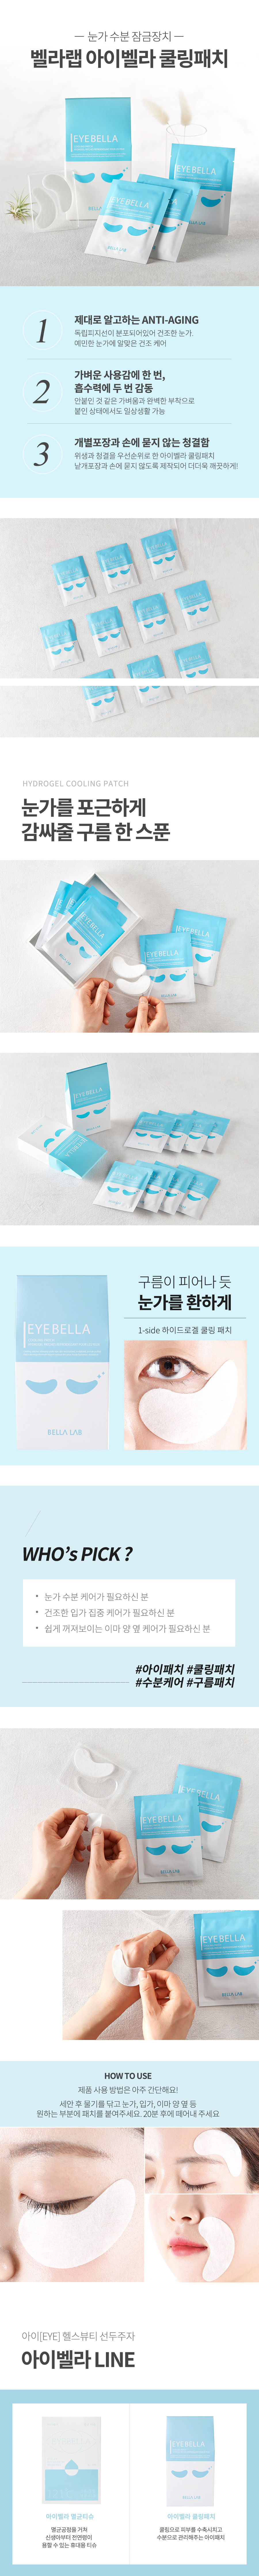 eyebella.jpg